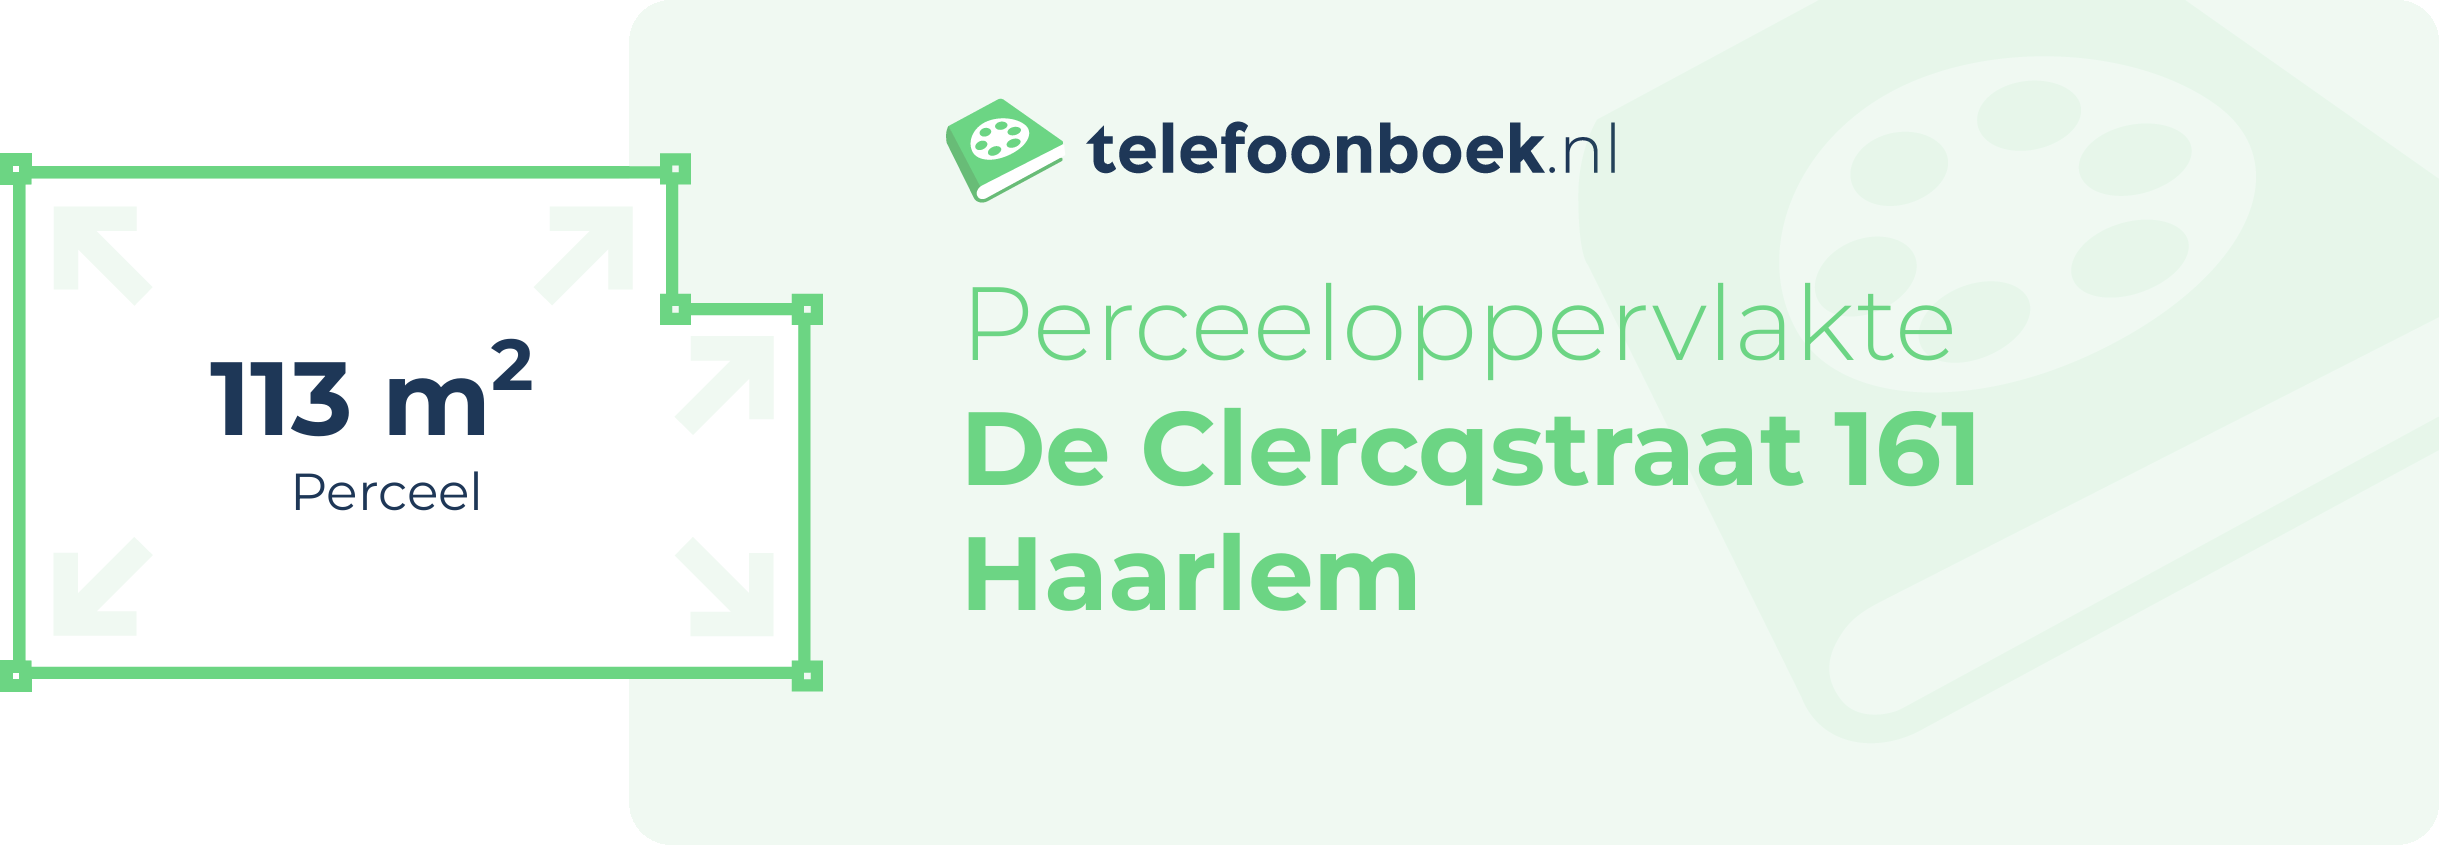 Perceeloppervlakte De Clercqstraat 161 Haarlem